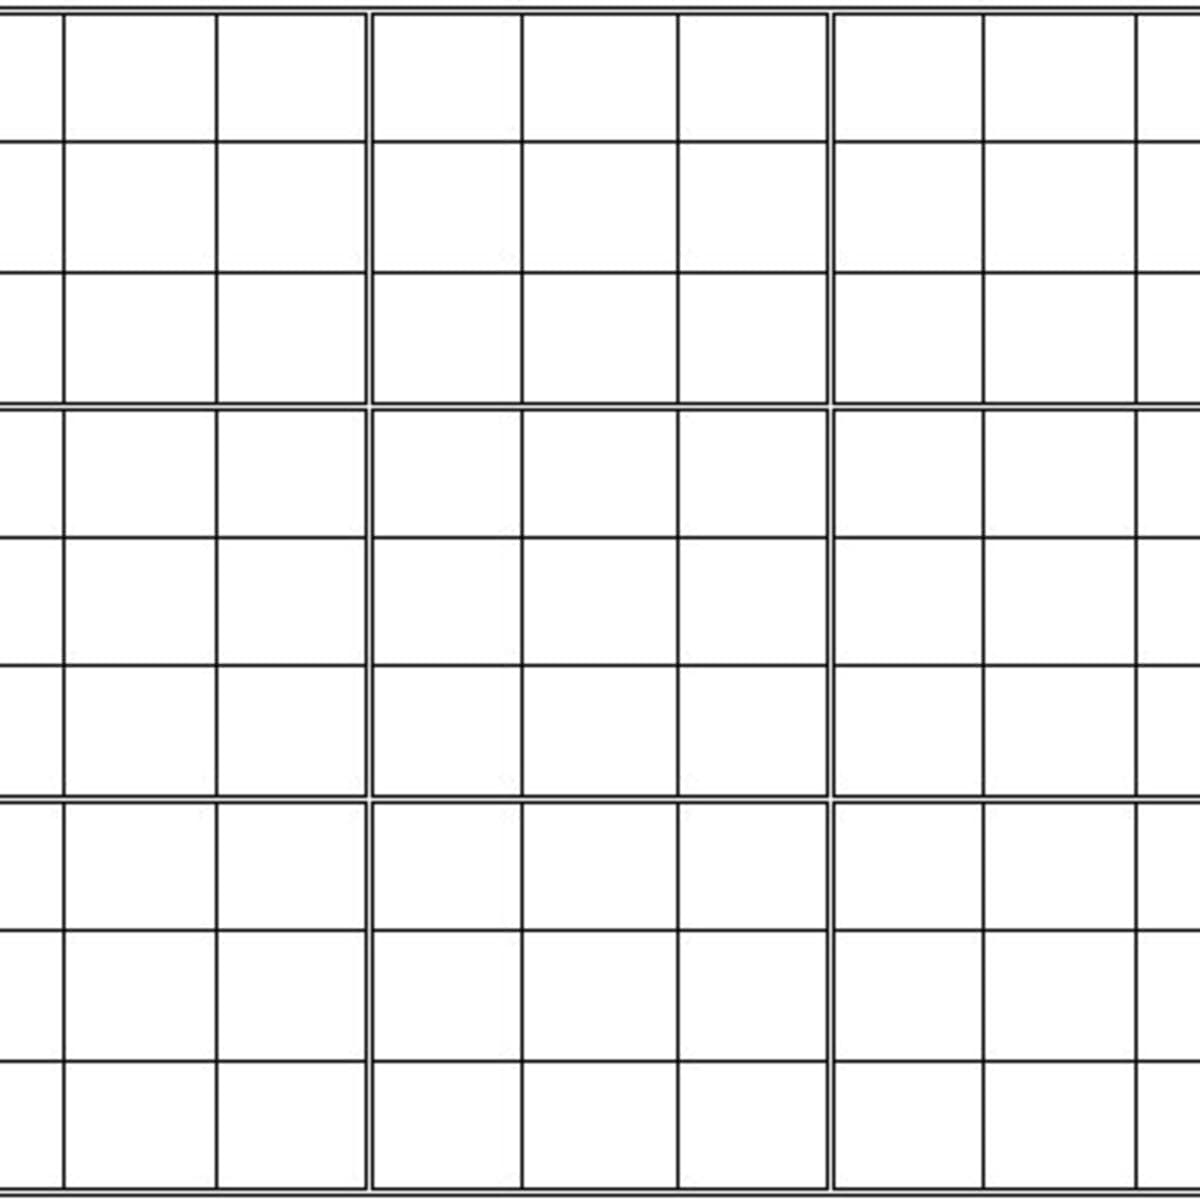 printable blank sudoku grid hubpages